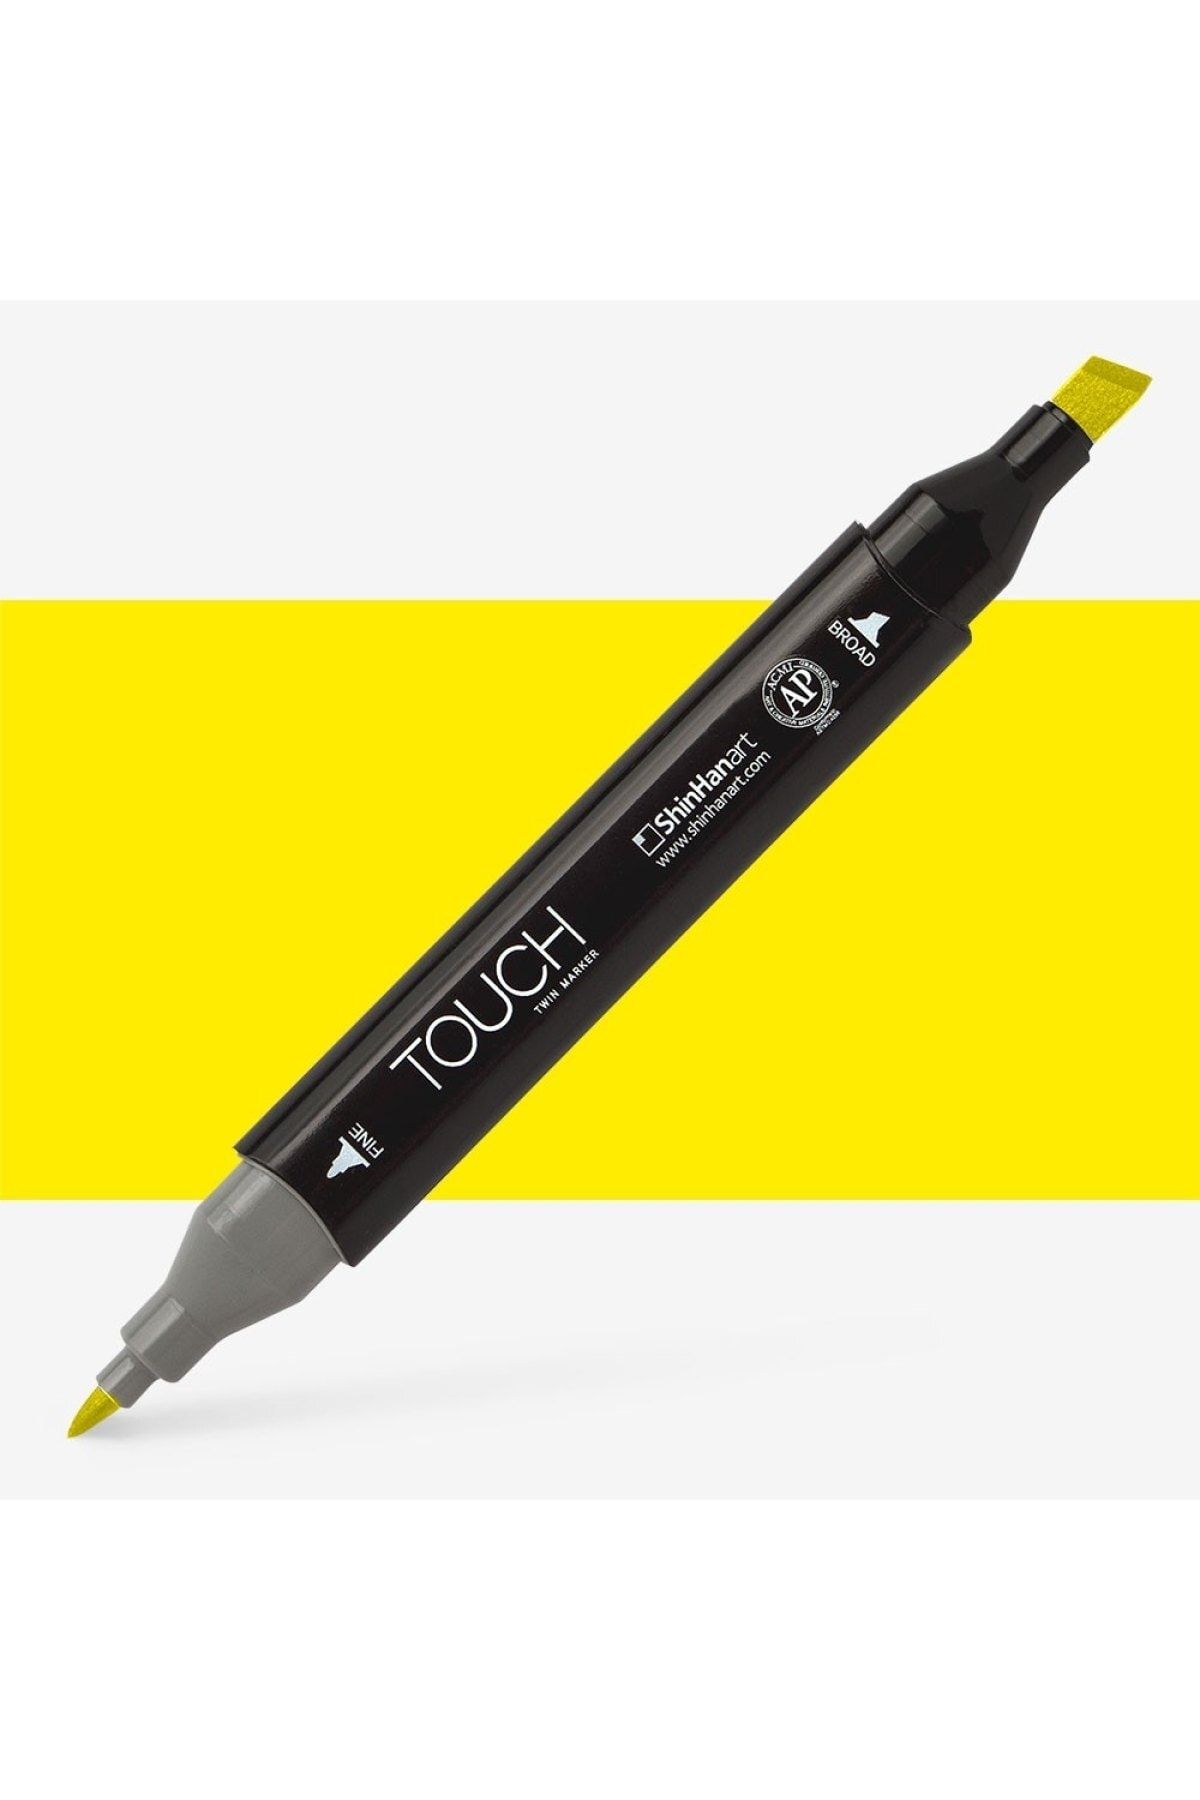 Shinhan Art Touch Twin Marker Pen : Çift Uçlu Marker Kalemi : Prımary Yellow : Y221